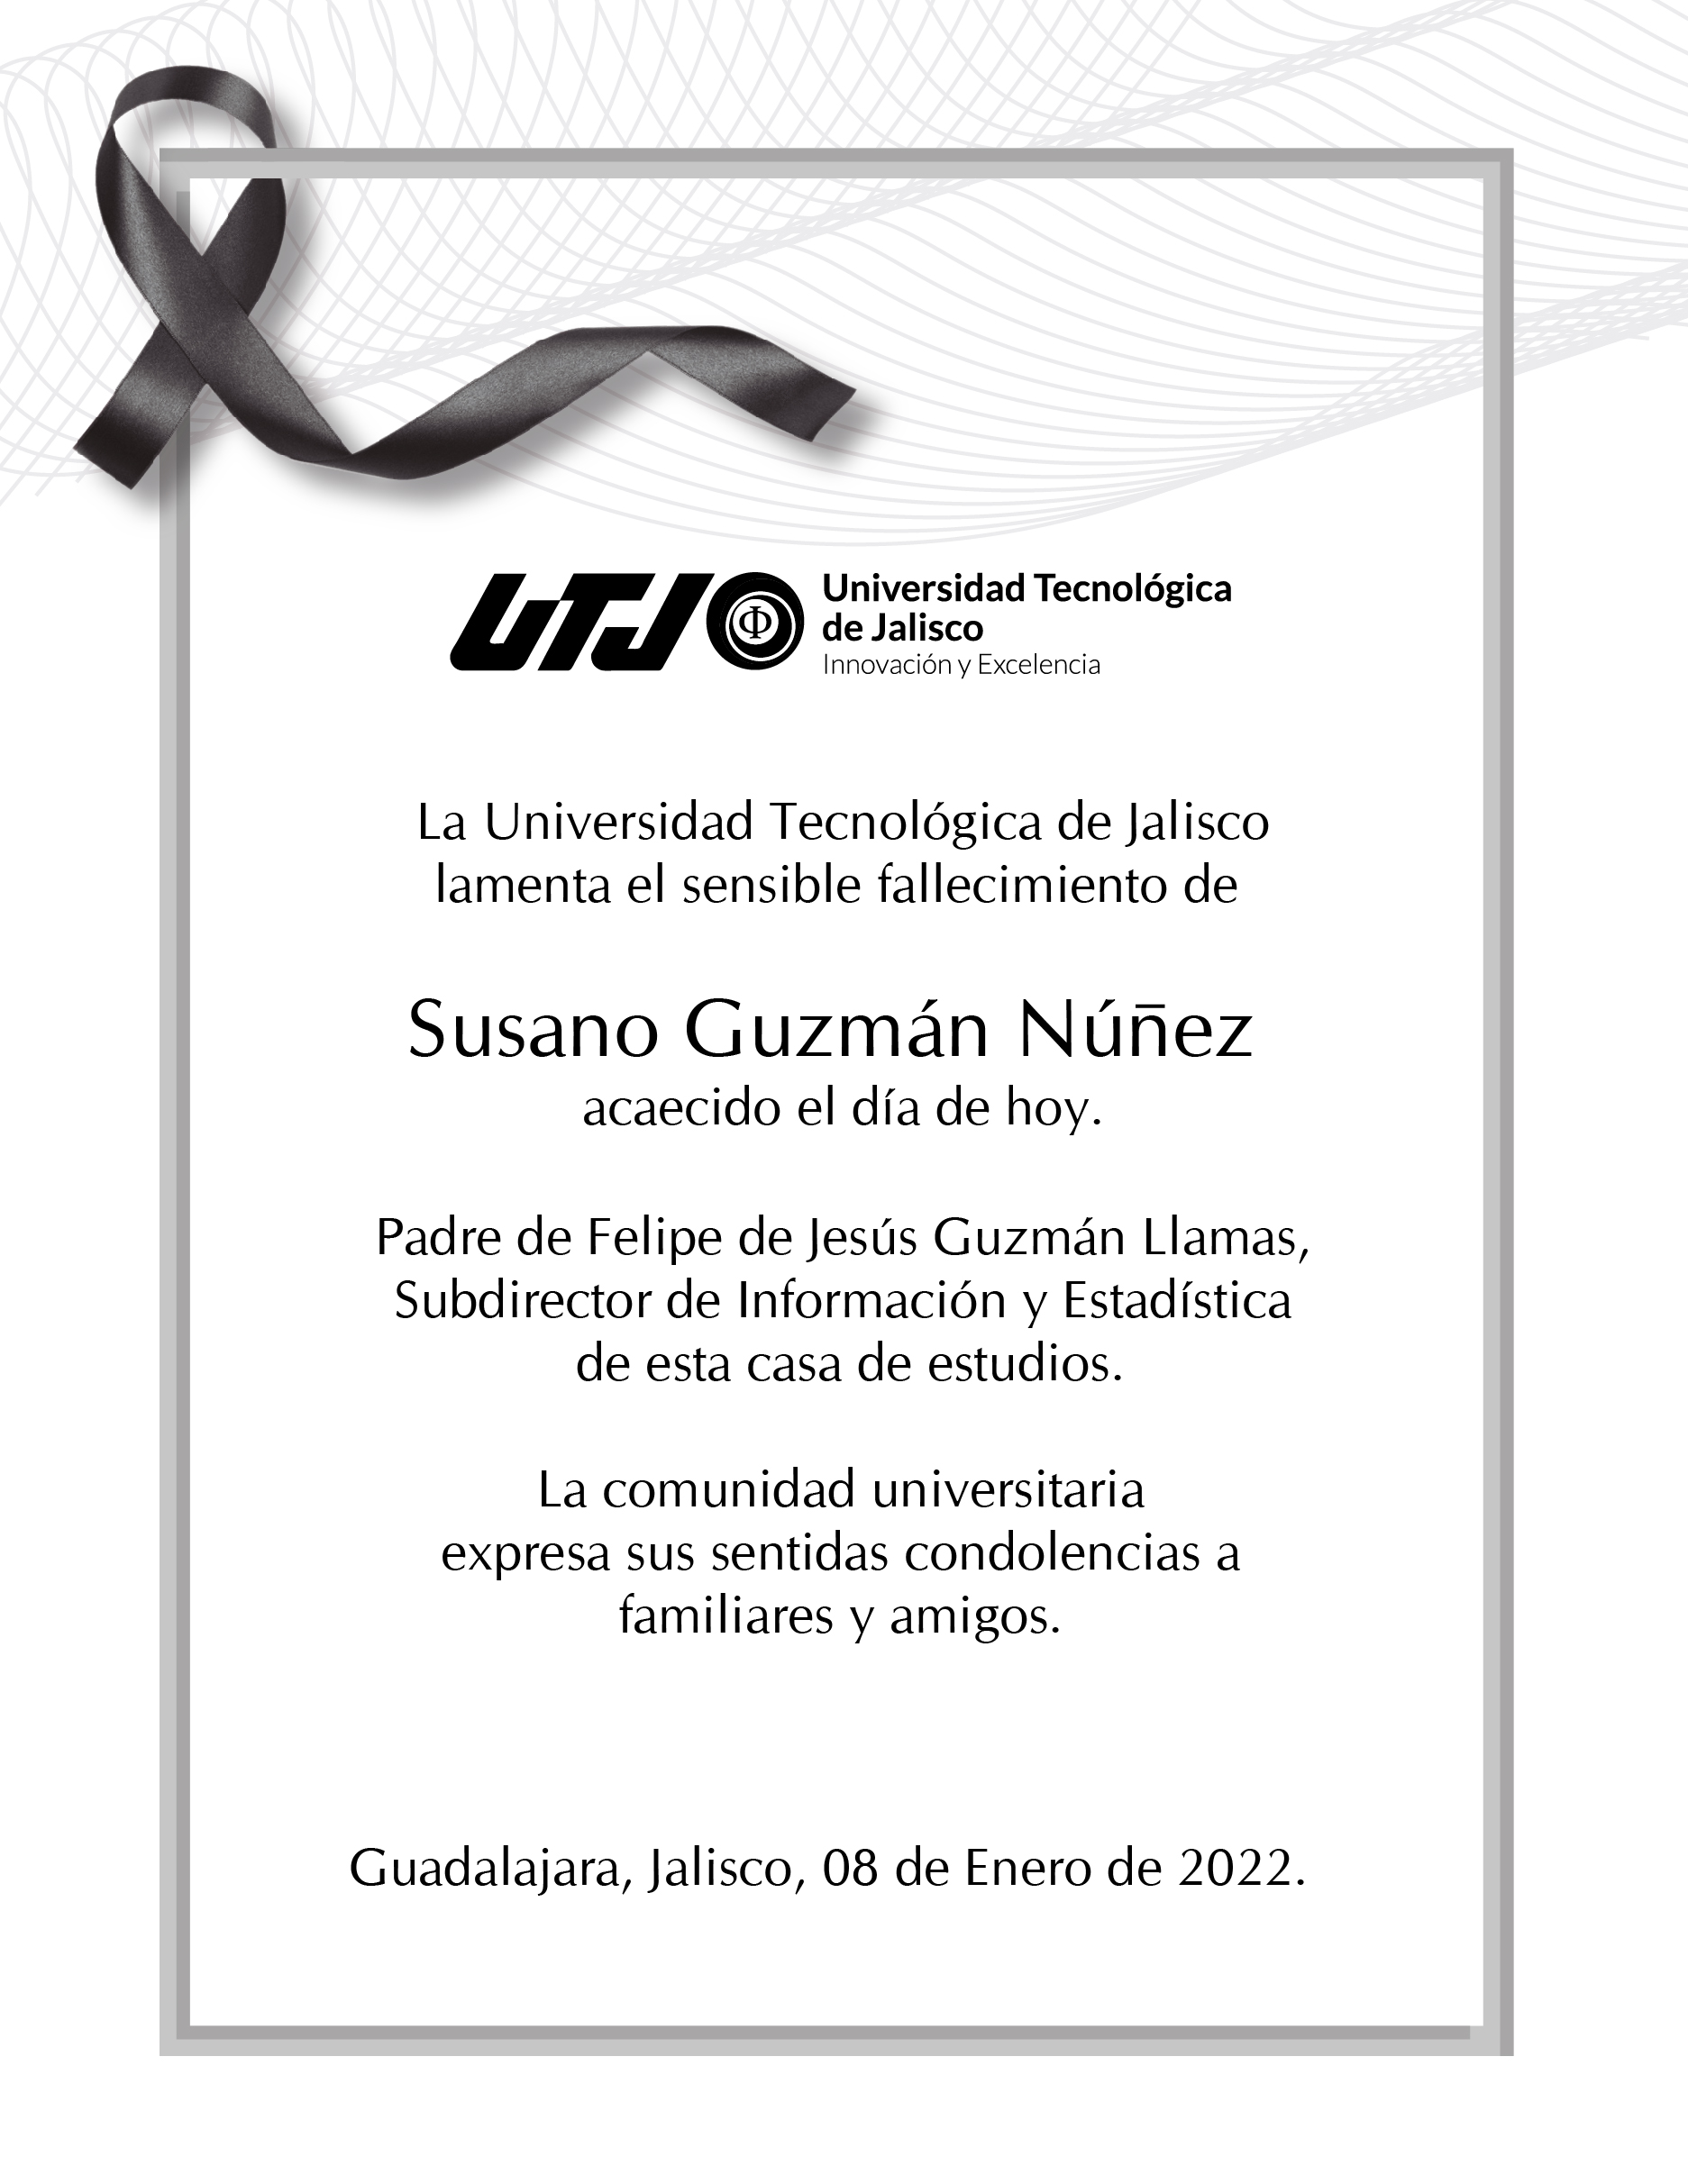 Susano Guzmán Núñez